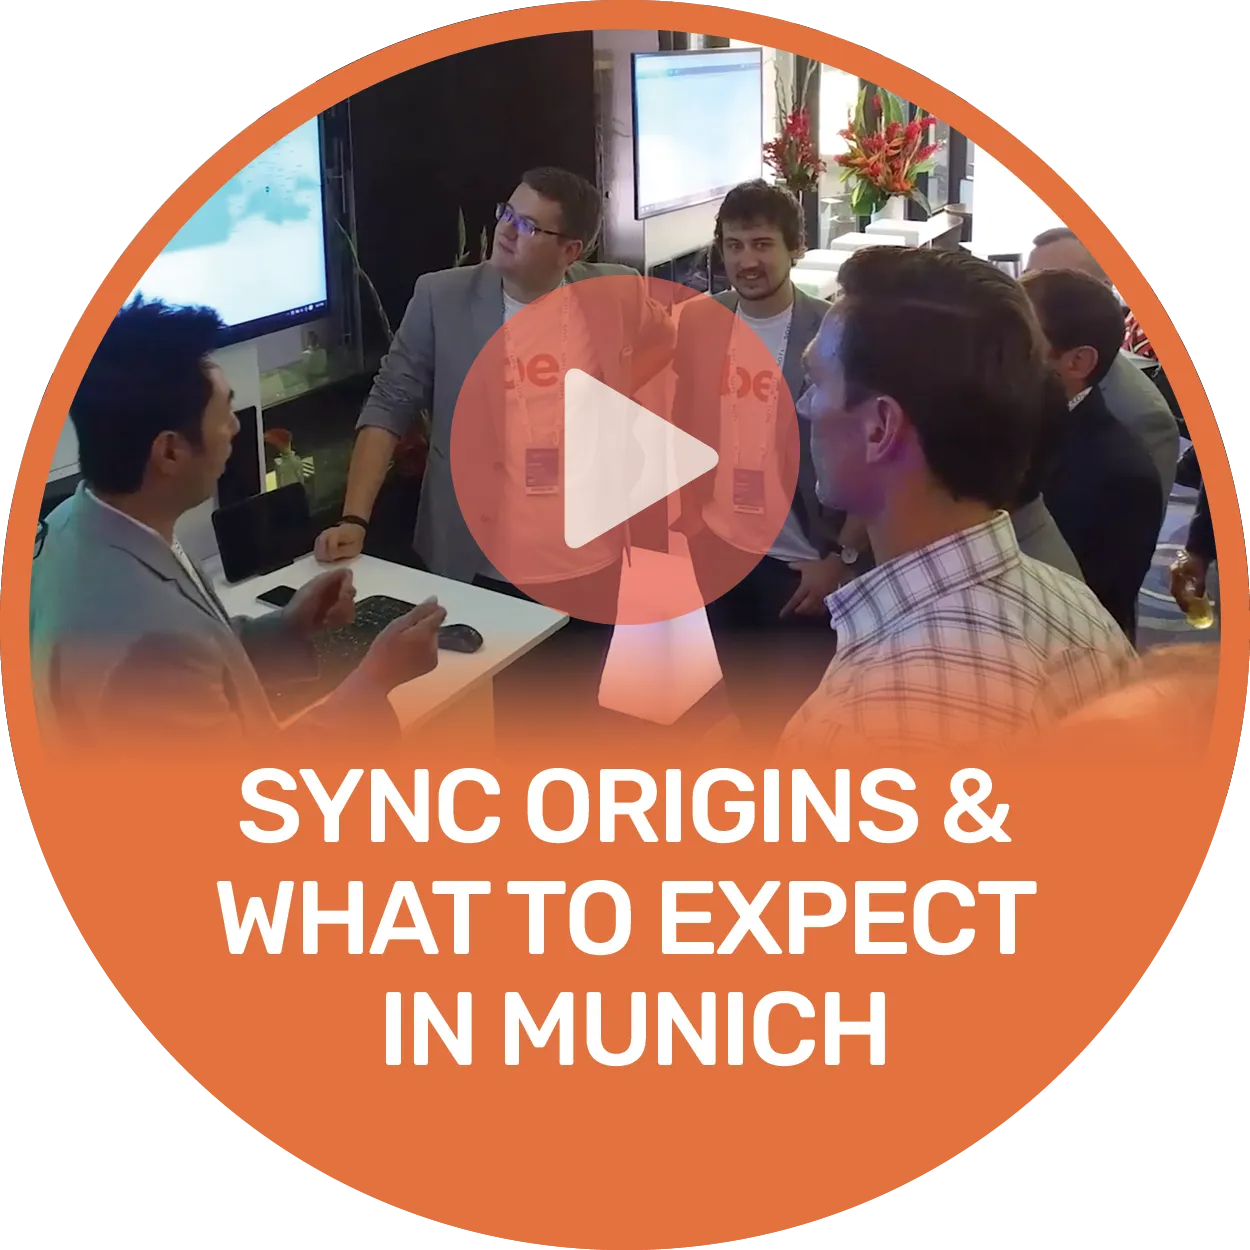 Sync origins video